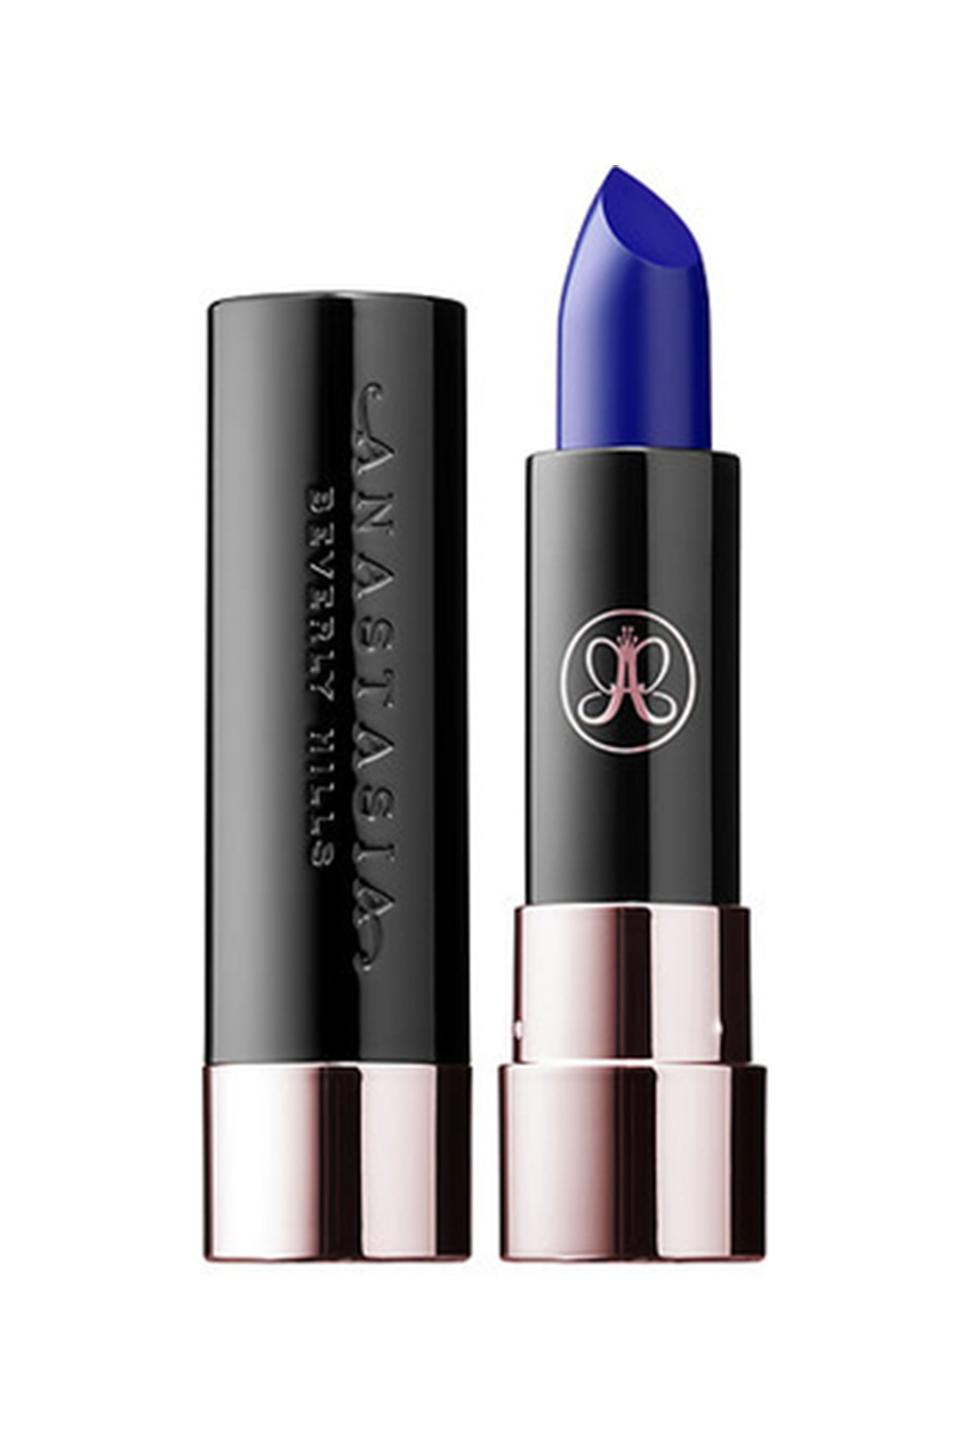 8) Anastasia Beverly Hills Matte Lipstick in Cobalt